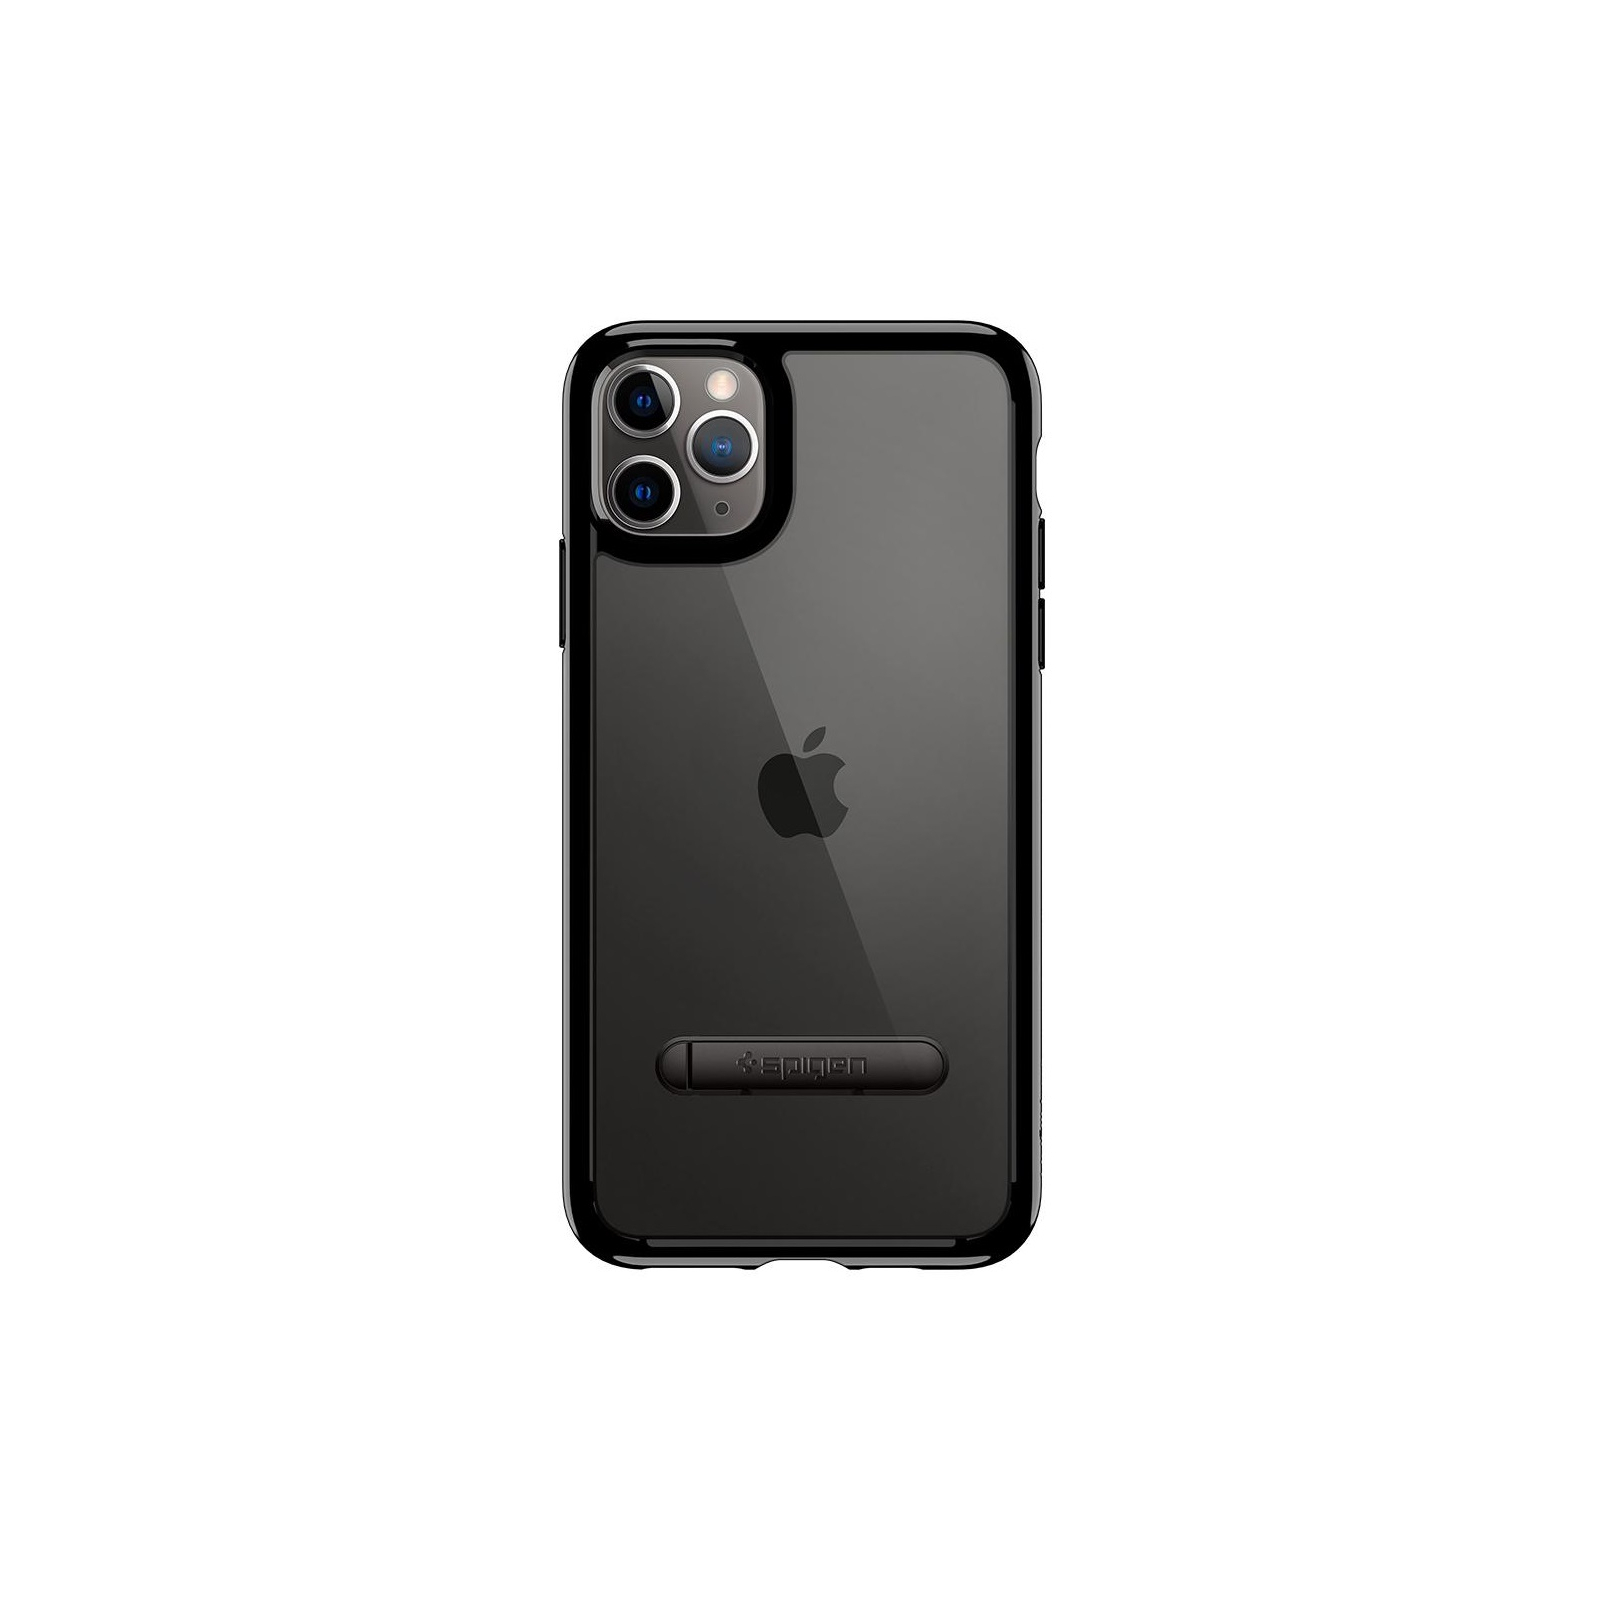 Чехол для мобильного телефона Spigen iPhone 11 Pro Ultra Hybrid S, Jet Black (077CS27444)